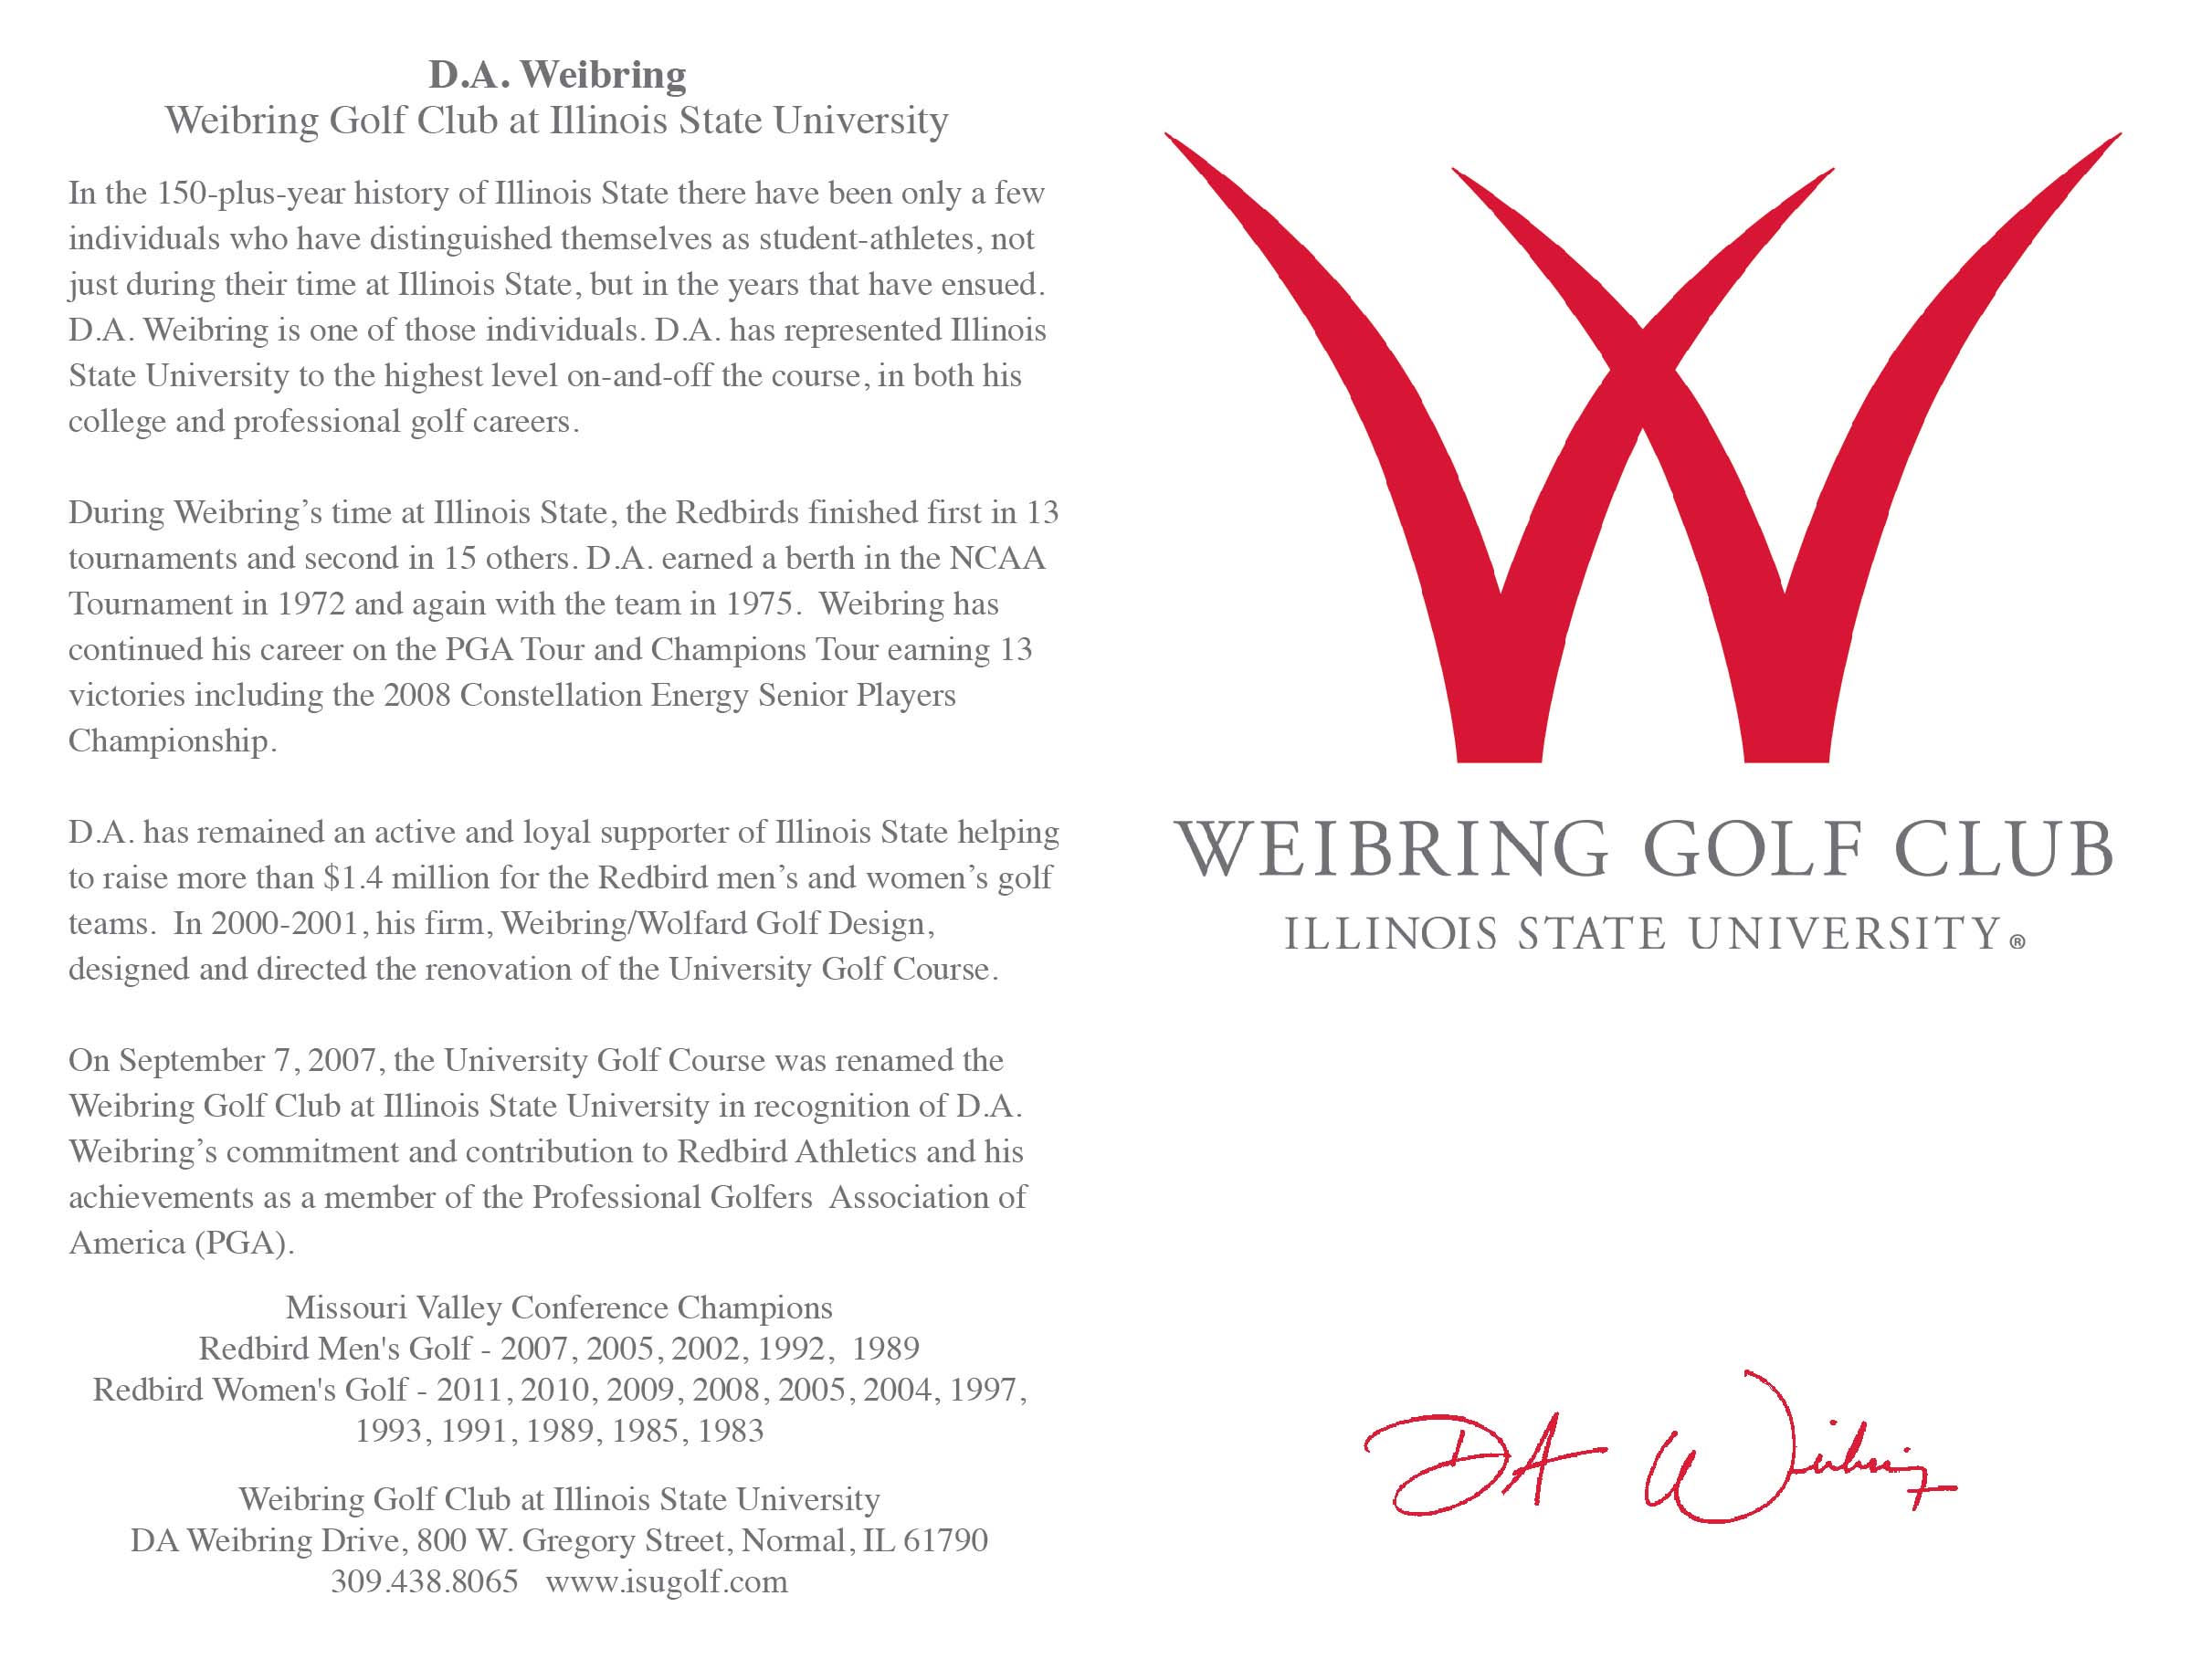 D.A. Weibring GC at ISU